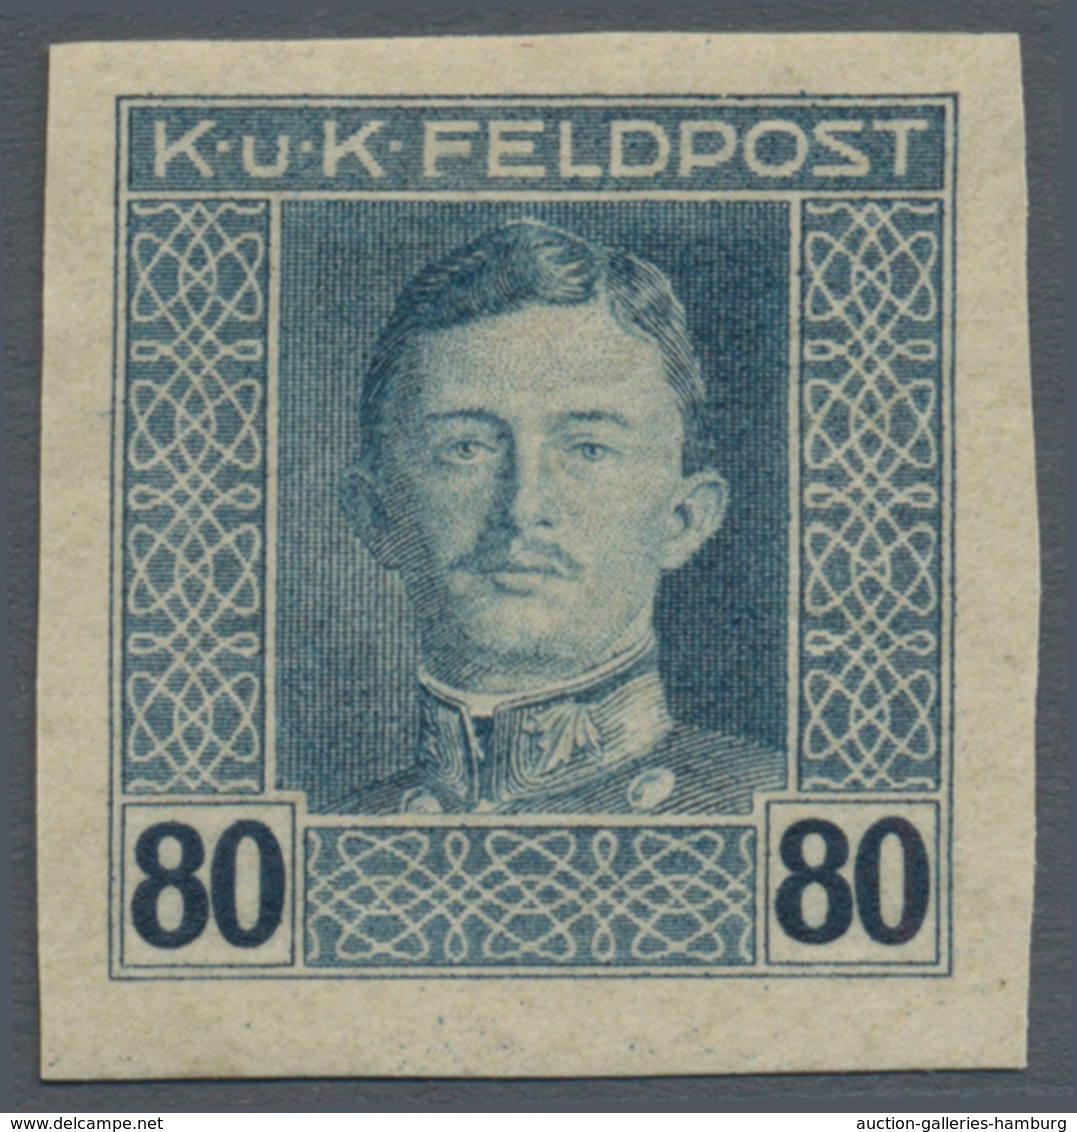 Österreichisch-Ungarische Feldpost - Allgemeine Ausgabe: 1915, 1 H - 10 K Kaiser Karl UNGEZÄHNT, kom